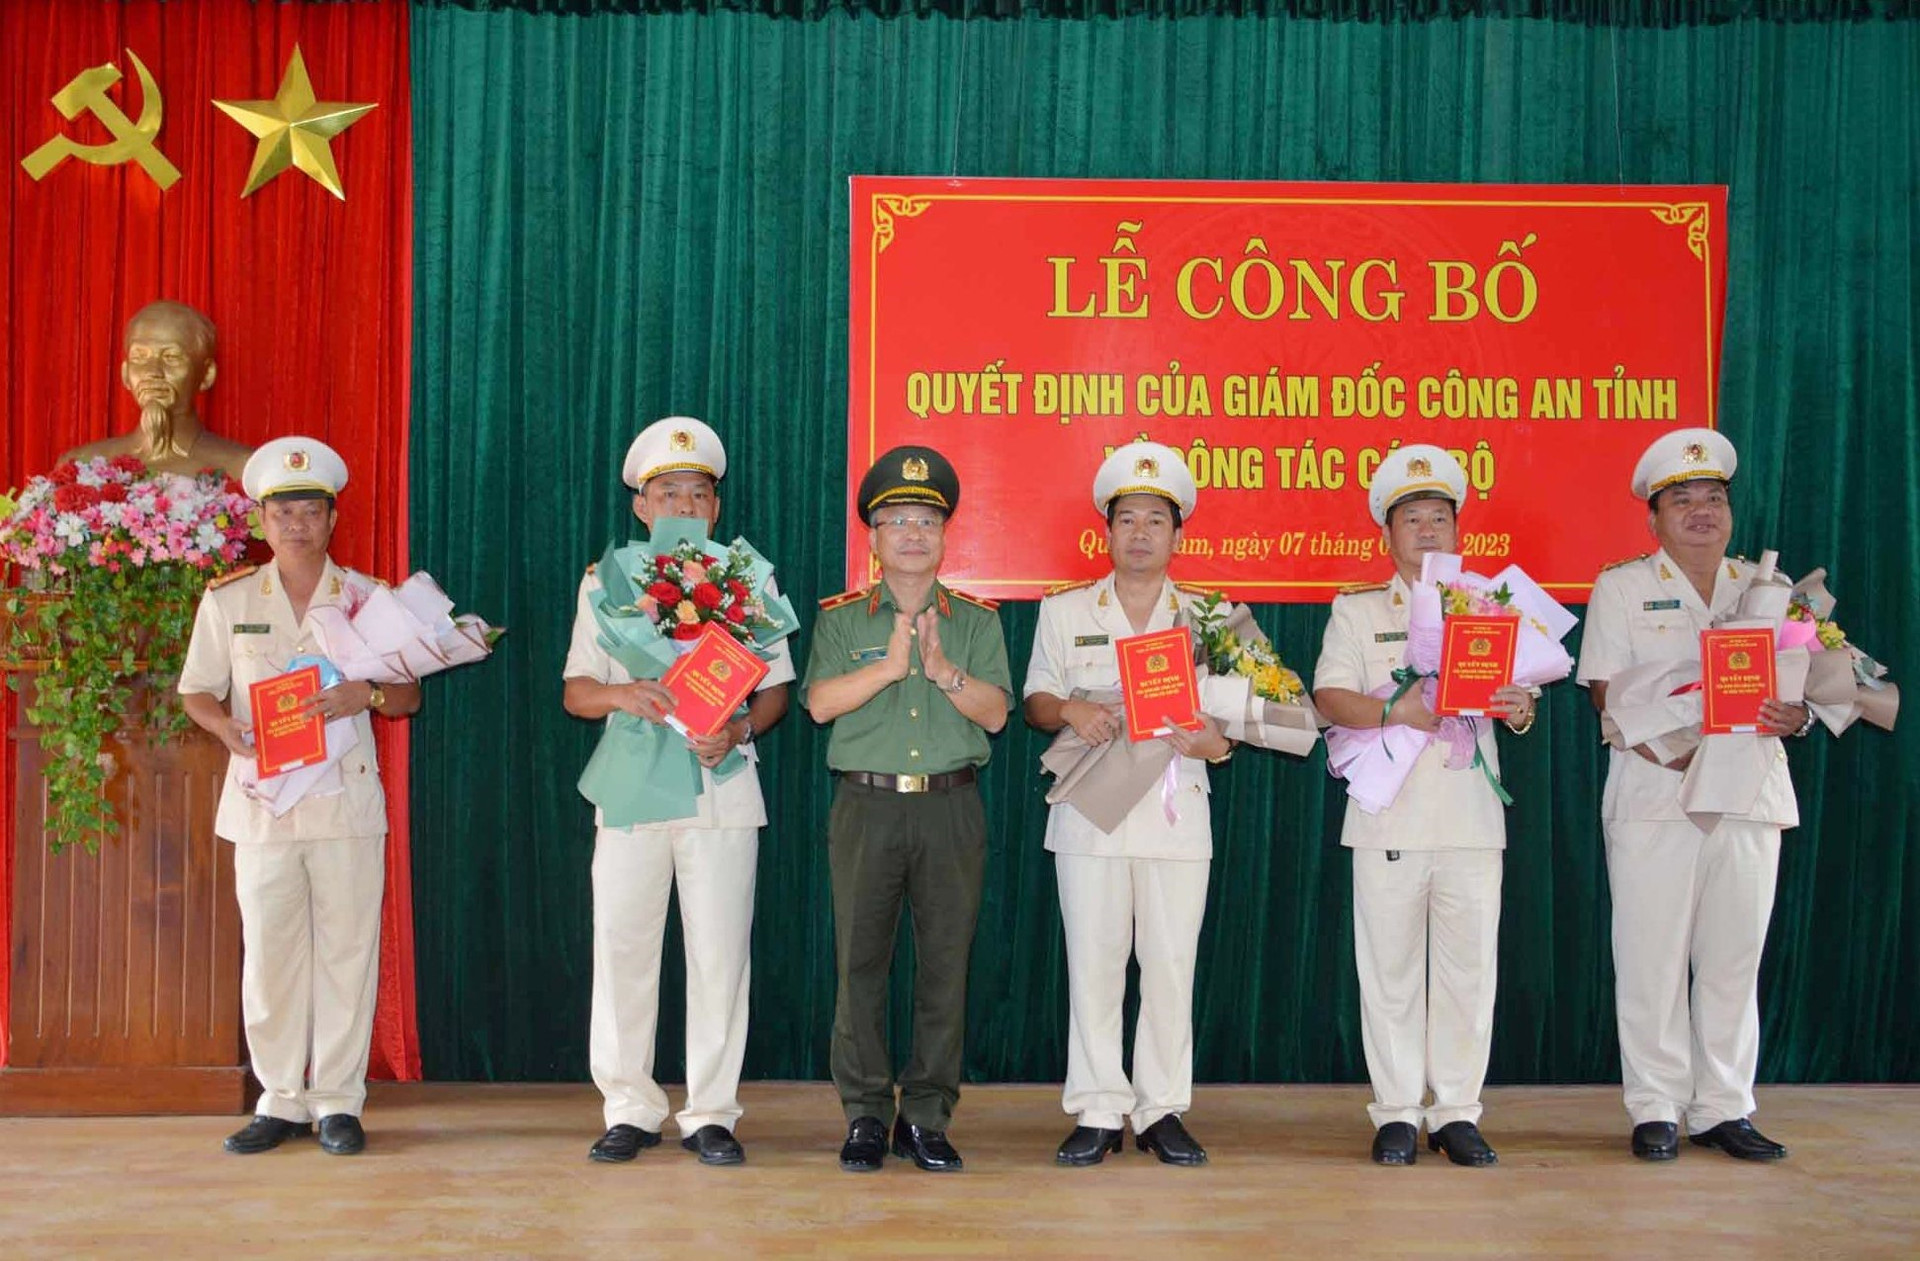 Thiếu tướng Nguyễn Đức Dũng, Giám đốc Công an tỉnh trao quyết định và tặng hoa chúc mừng các đồng chí được điều động. Ảnh: M.T